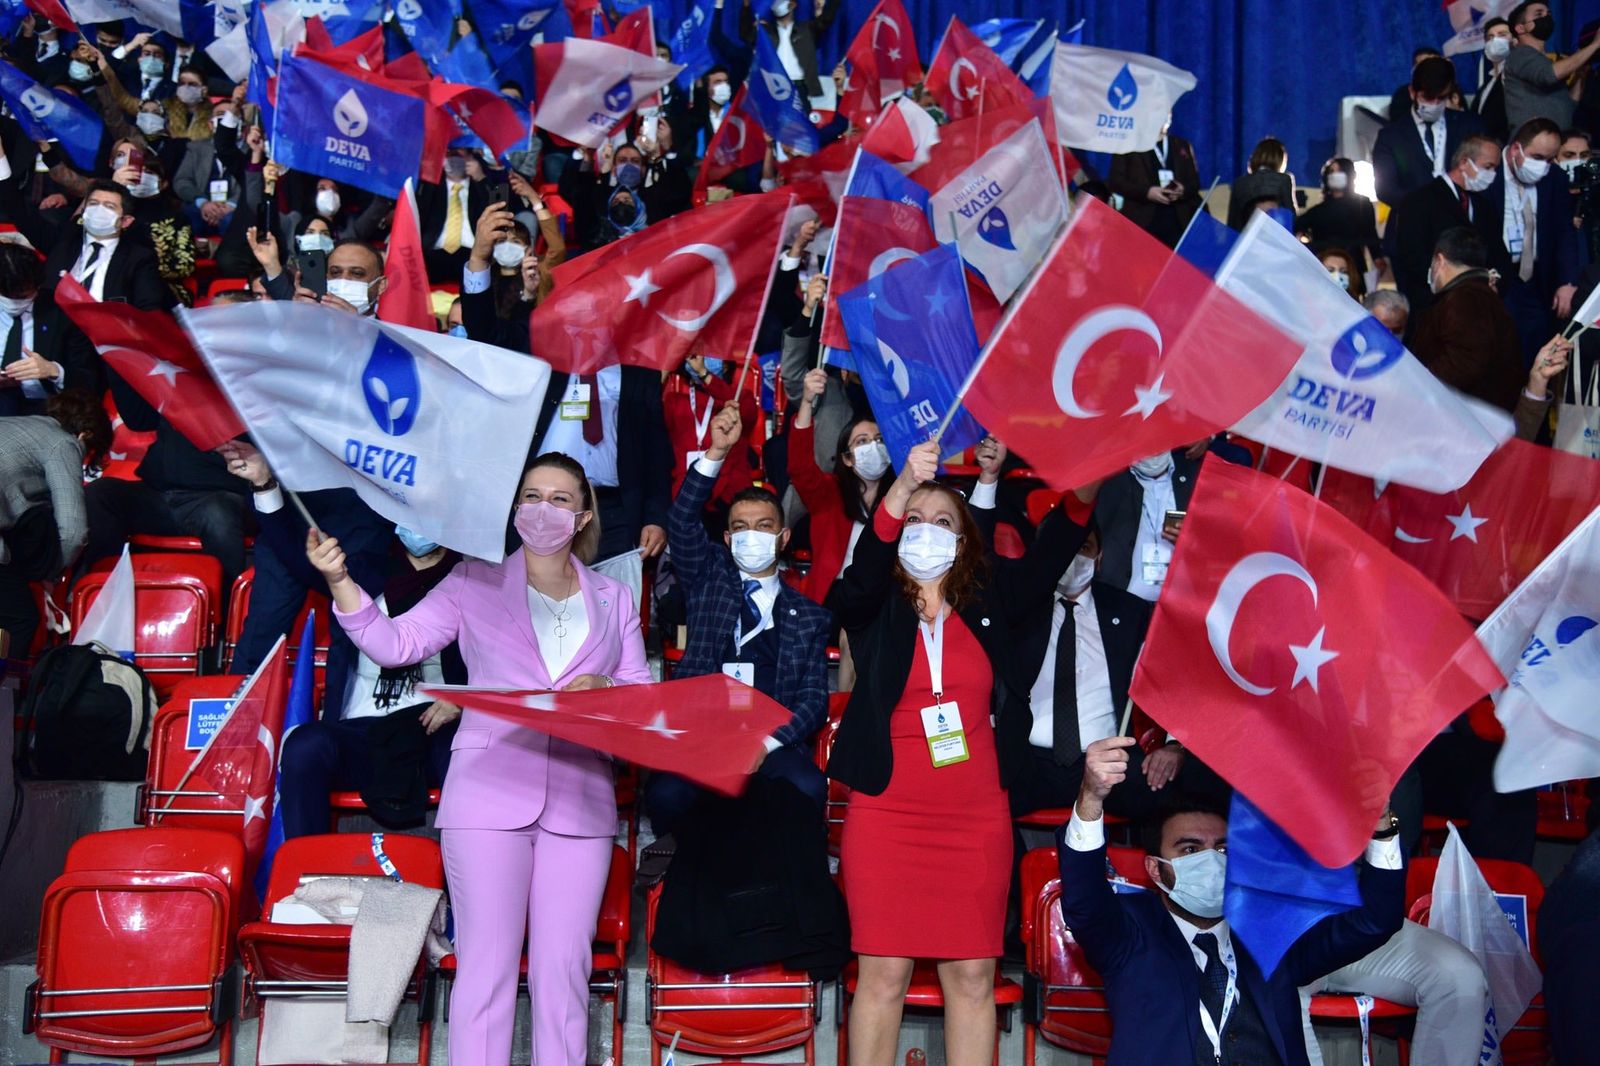 أنصار حزب الديمقراطية والتقدم التركي المعارض خلال مؤتمره العام الأول في أنقر- 29 ديسمبر 2020